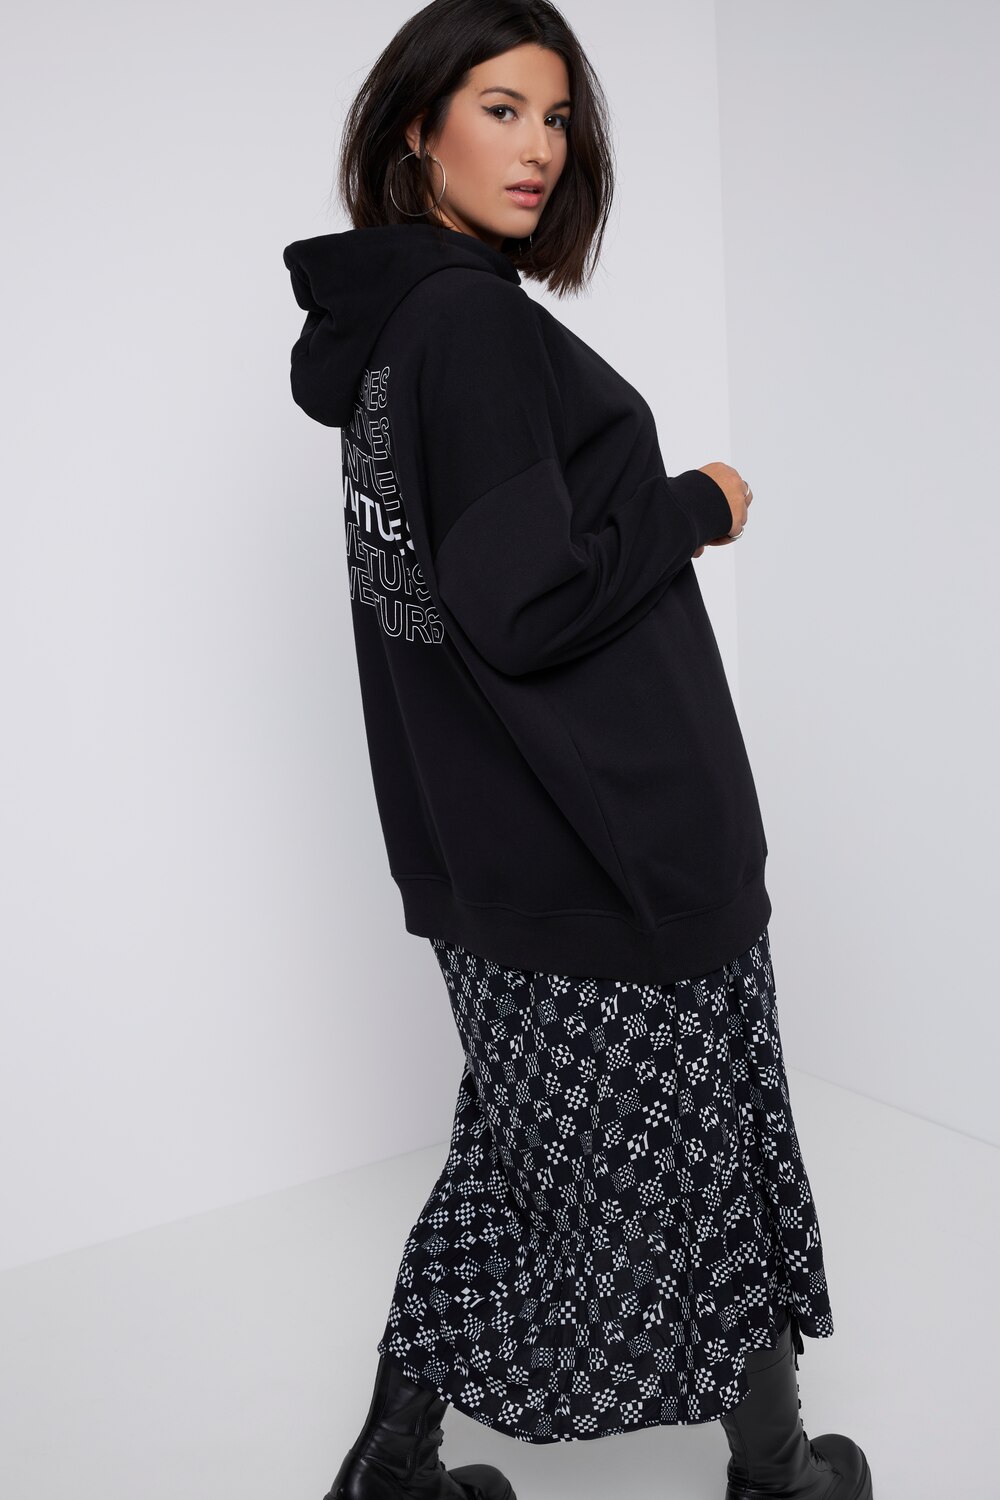 Grote Maten hoodie, Dames, zwart, Maat: 46/48, Katoen/Polyester, Studio Untold